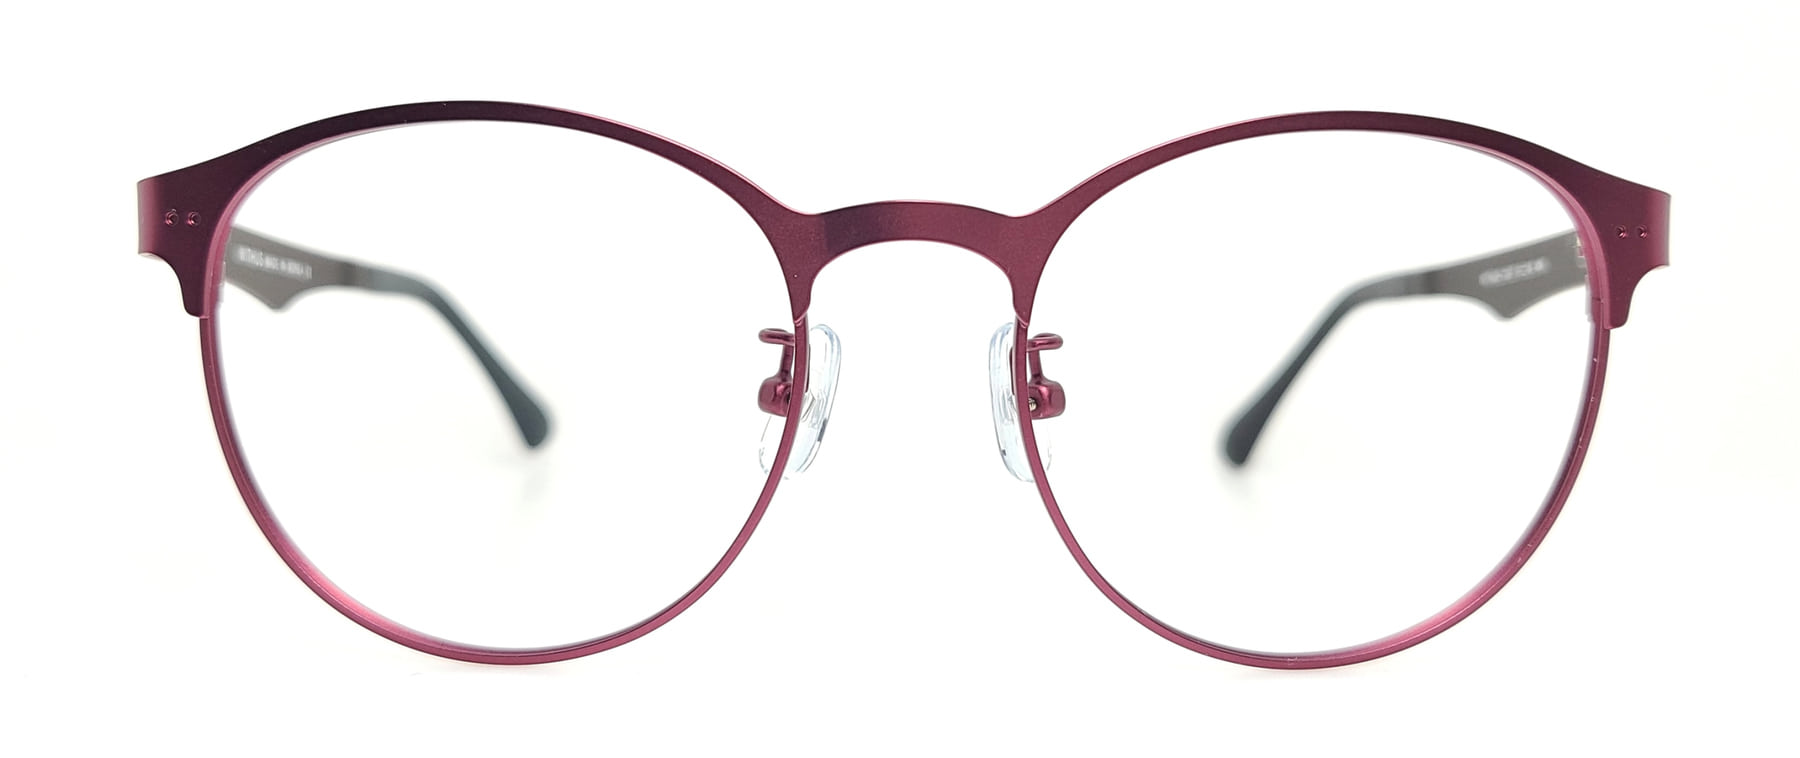 WITHUS-7307, Korean glasses, sunglasses, eyeglasses, glasses